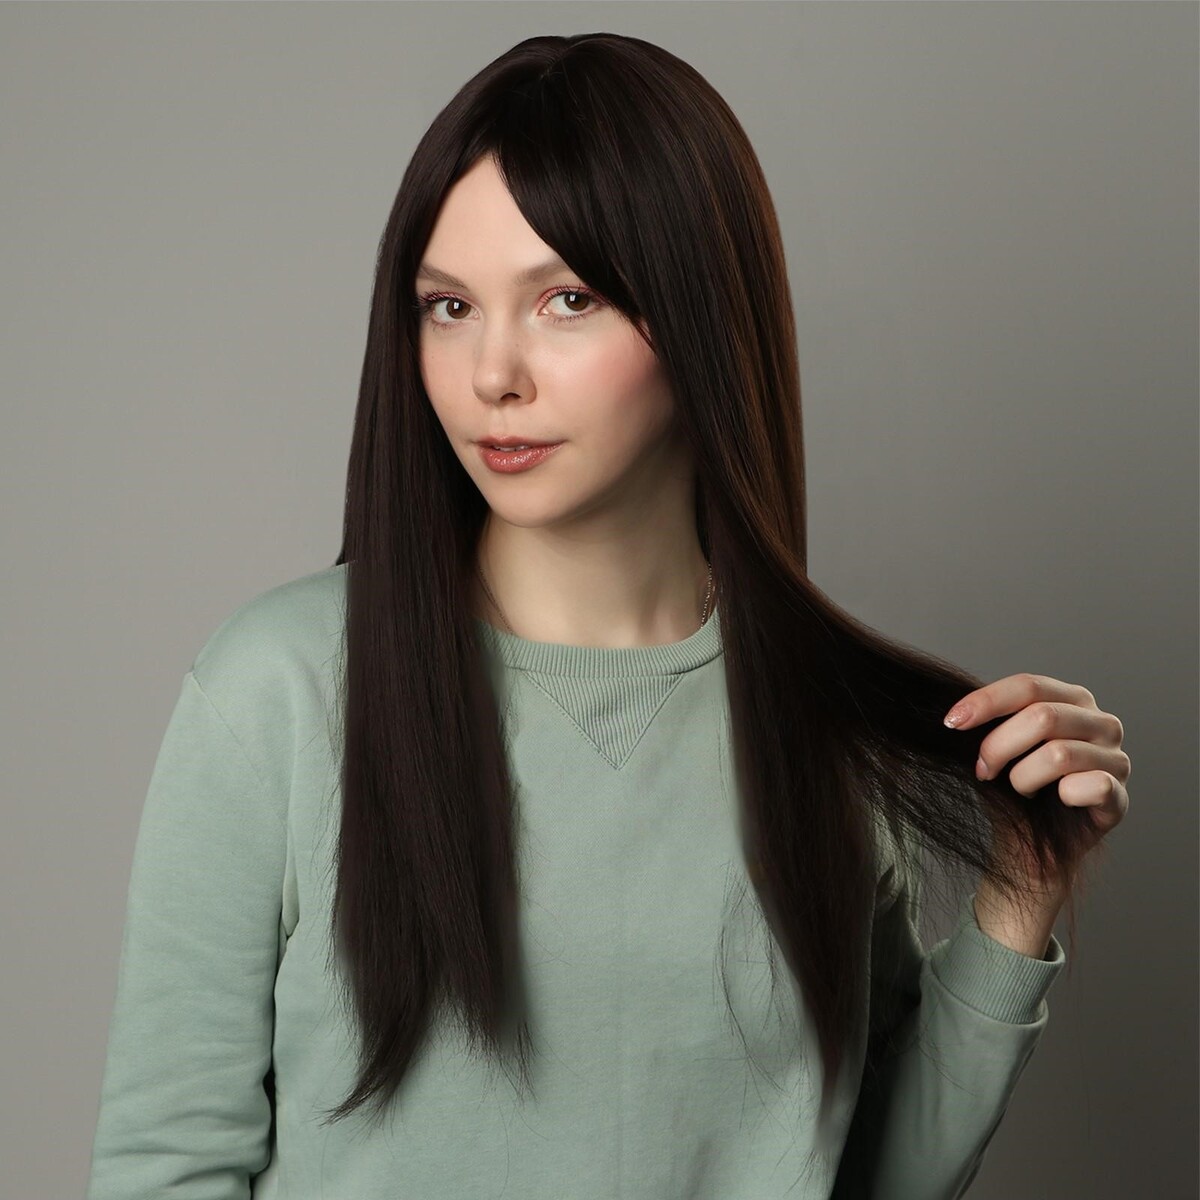 Парик искусственный, с челкой, имитация кожи, 60 см, цвет каштановый парик искусственный имитация кожи 60 см 160 гр русый sht8